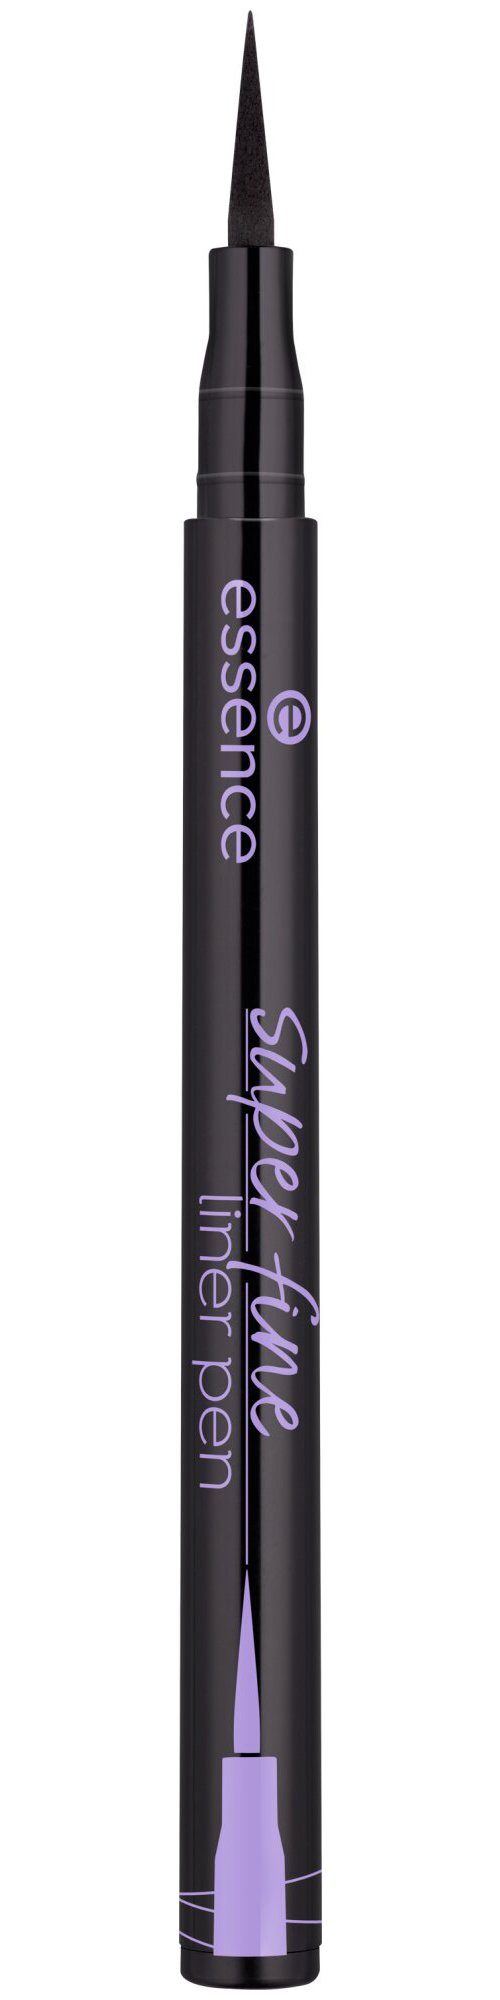 Essence Eyeliner super fine liner pen, 5-tlg